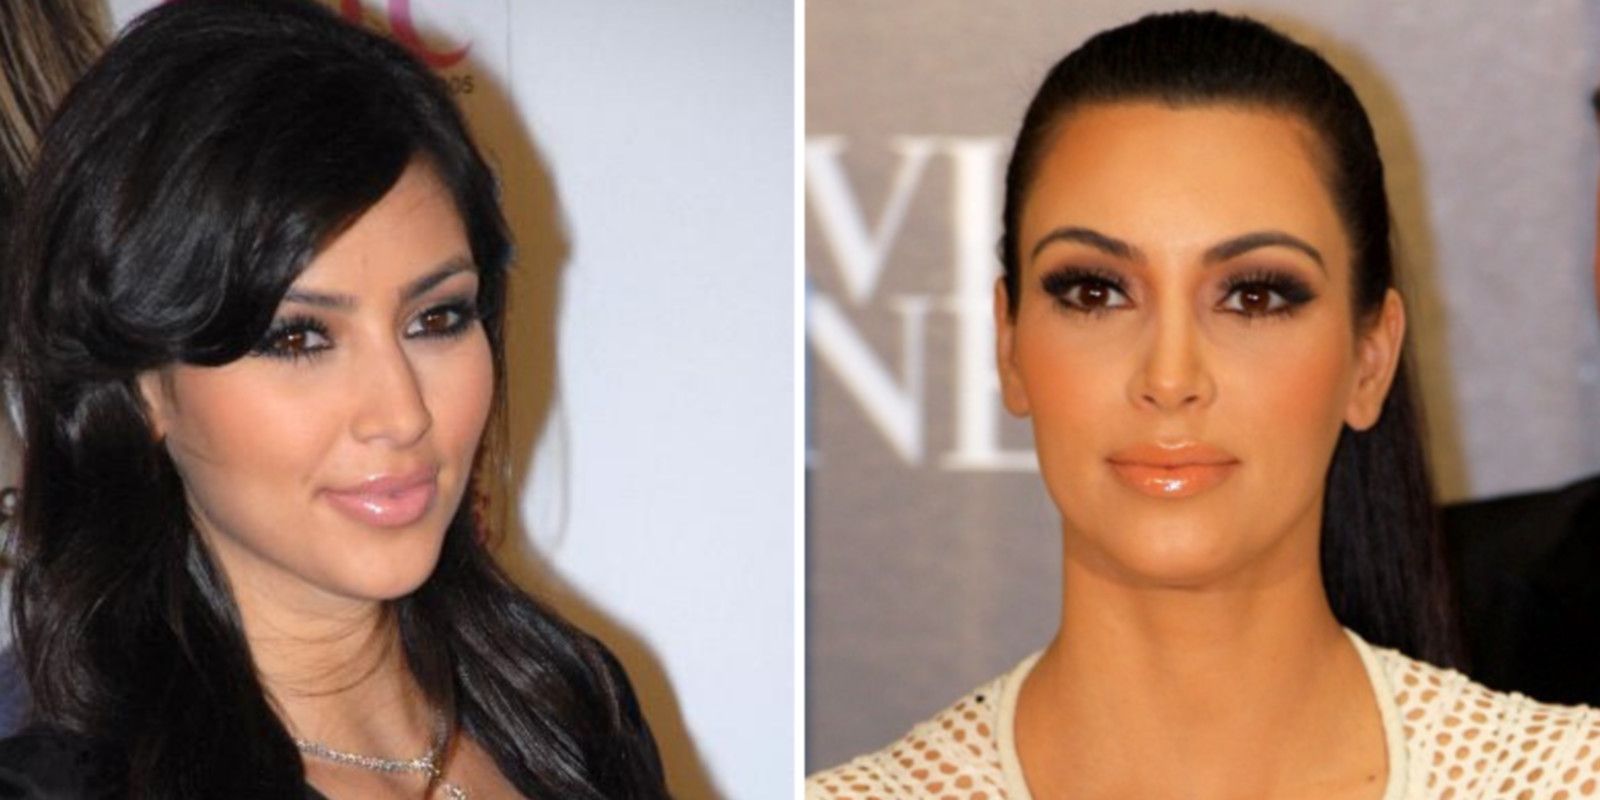 Kim Kardashian bichectomie avant / après